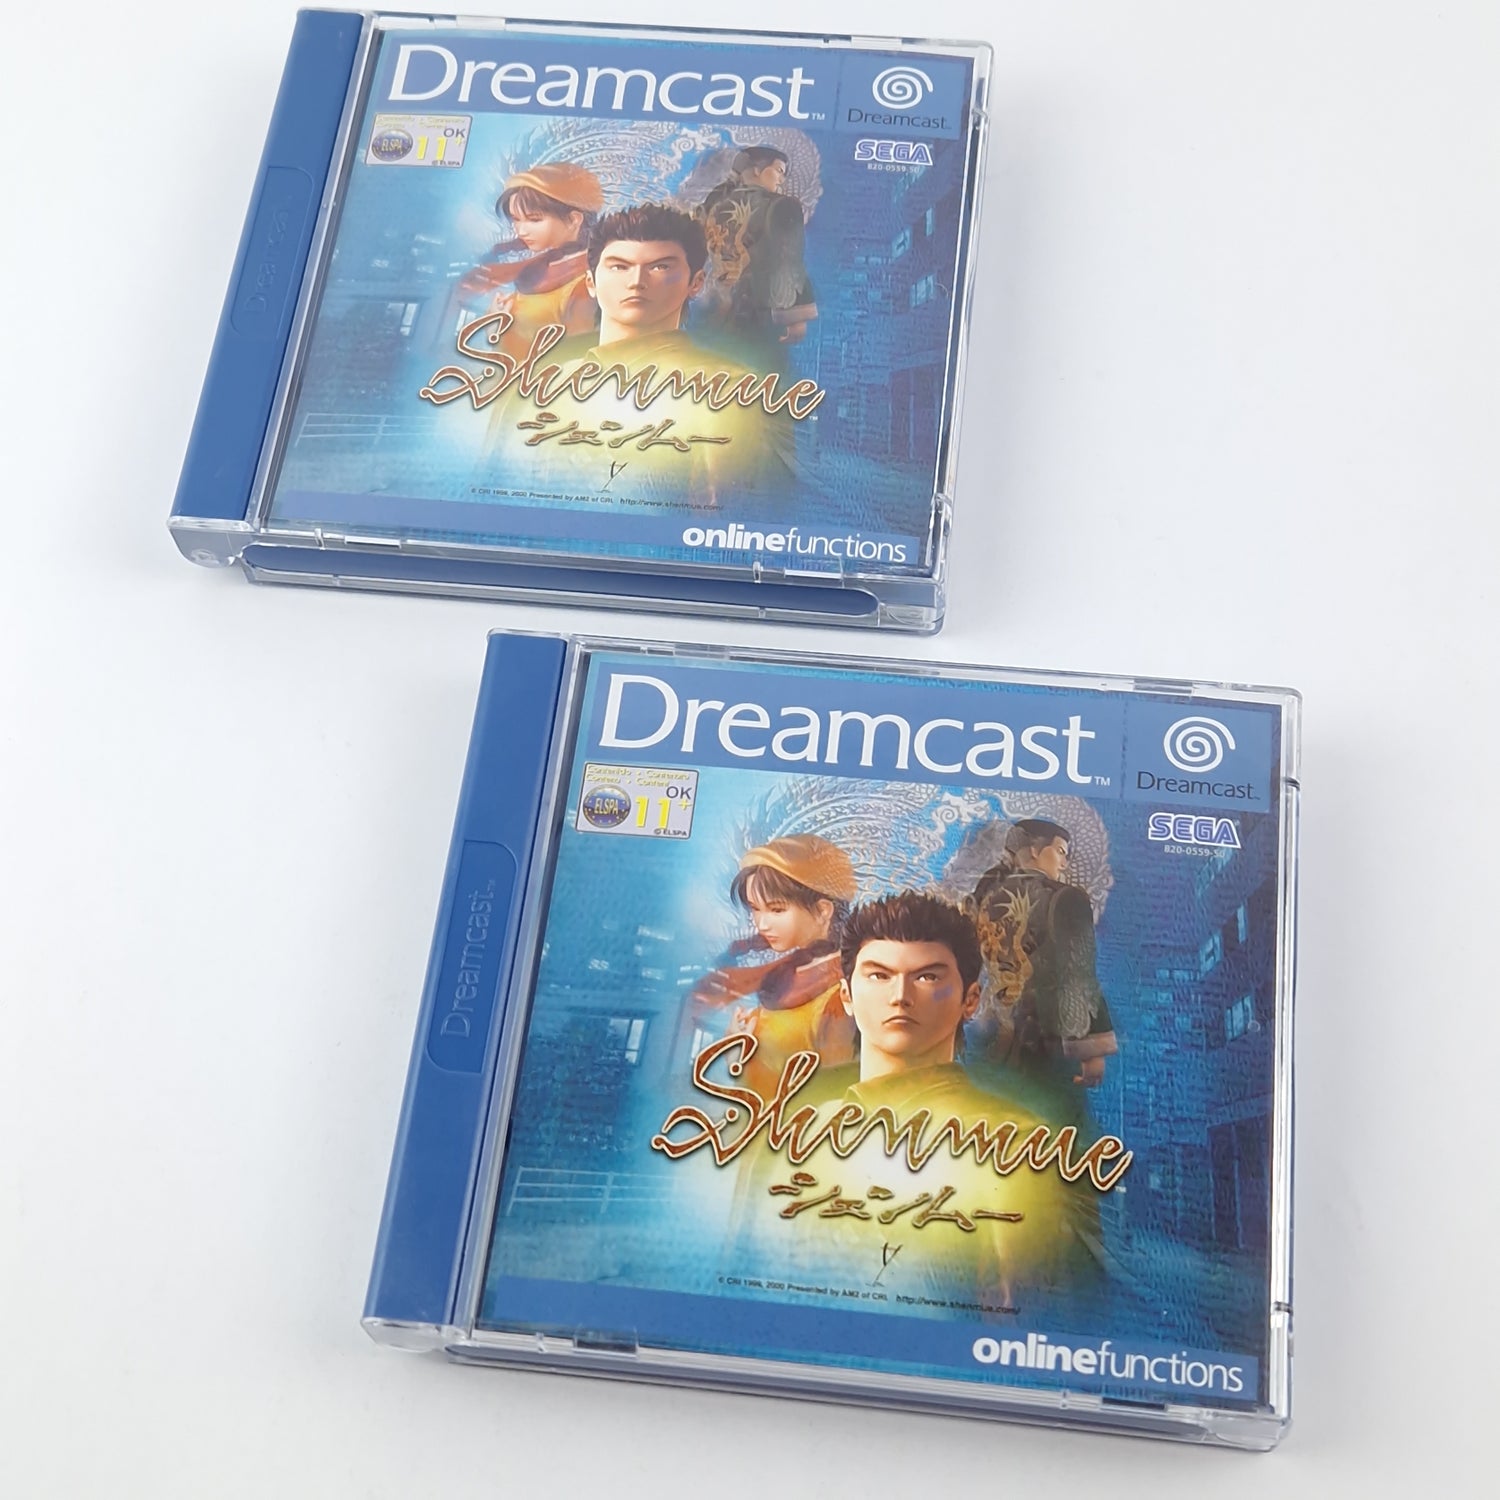 Sega Dreamcast Game: Shenmue - CD Instructions OVP / PAL DC